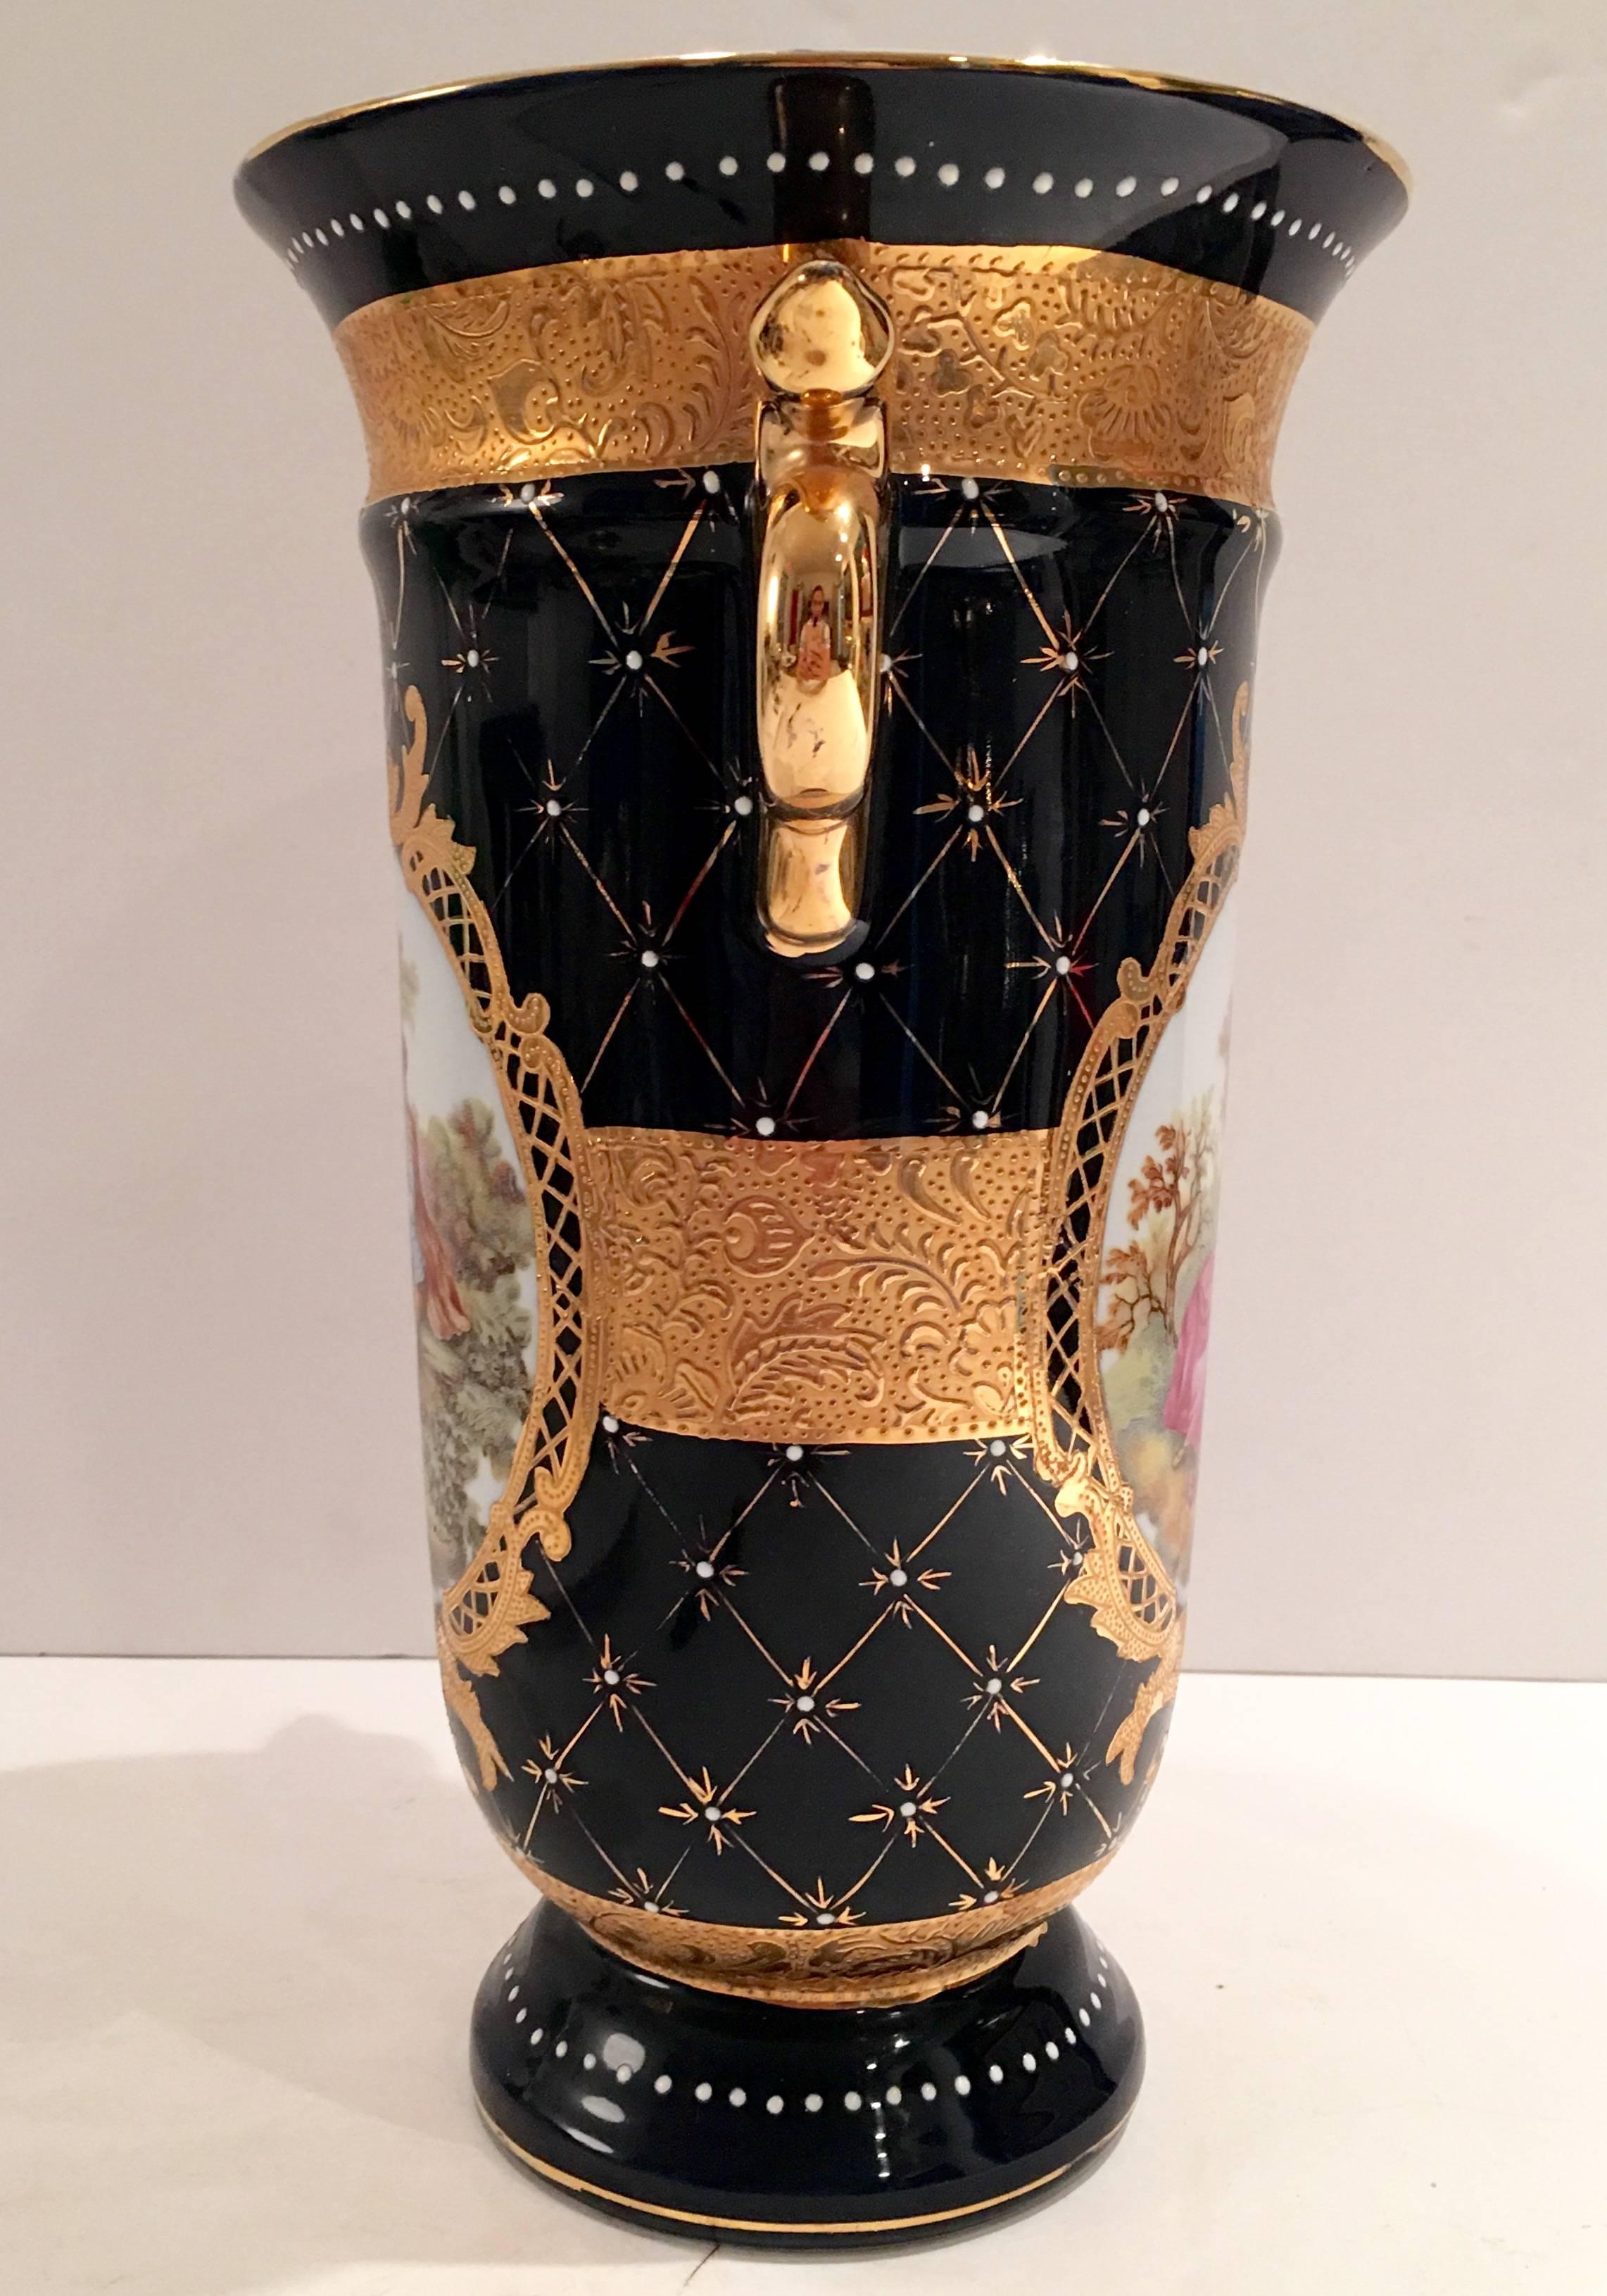 limoges blue and gold vase